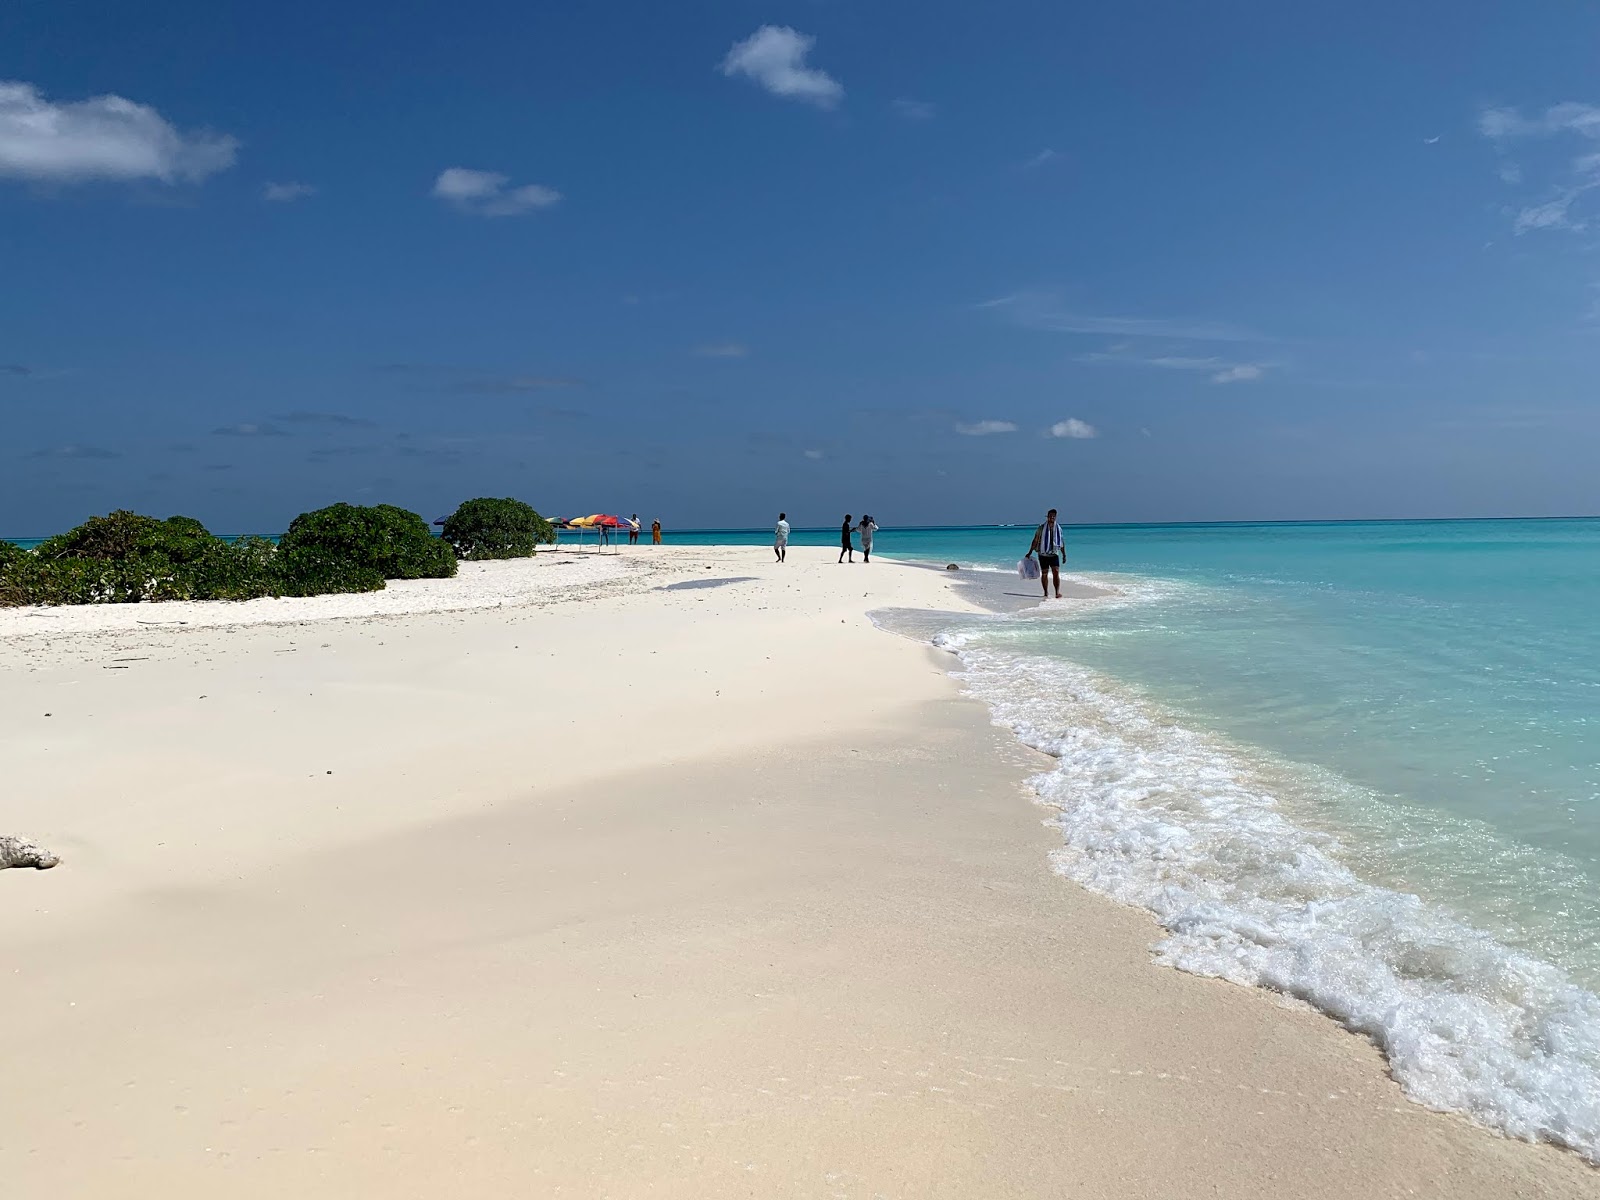 Fotografie cu Sand bank Maafushi cu o suprafață de nisip fin alb